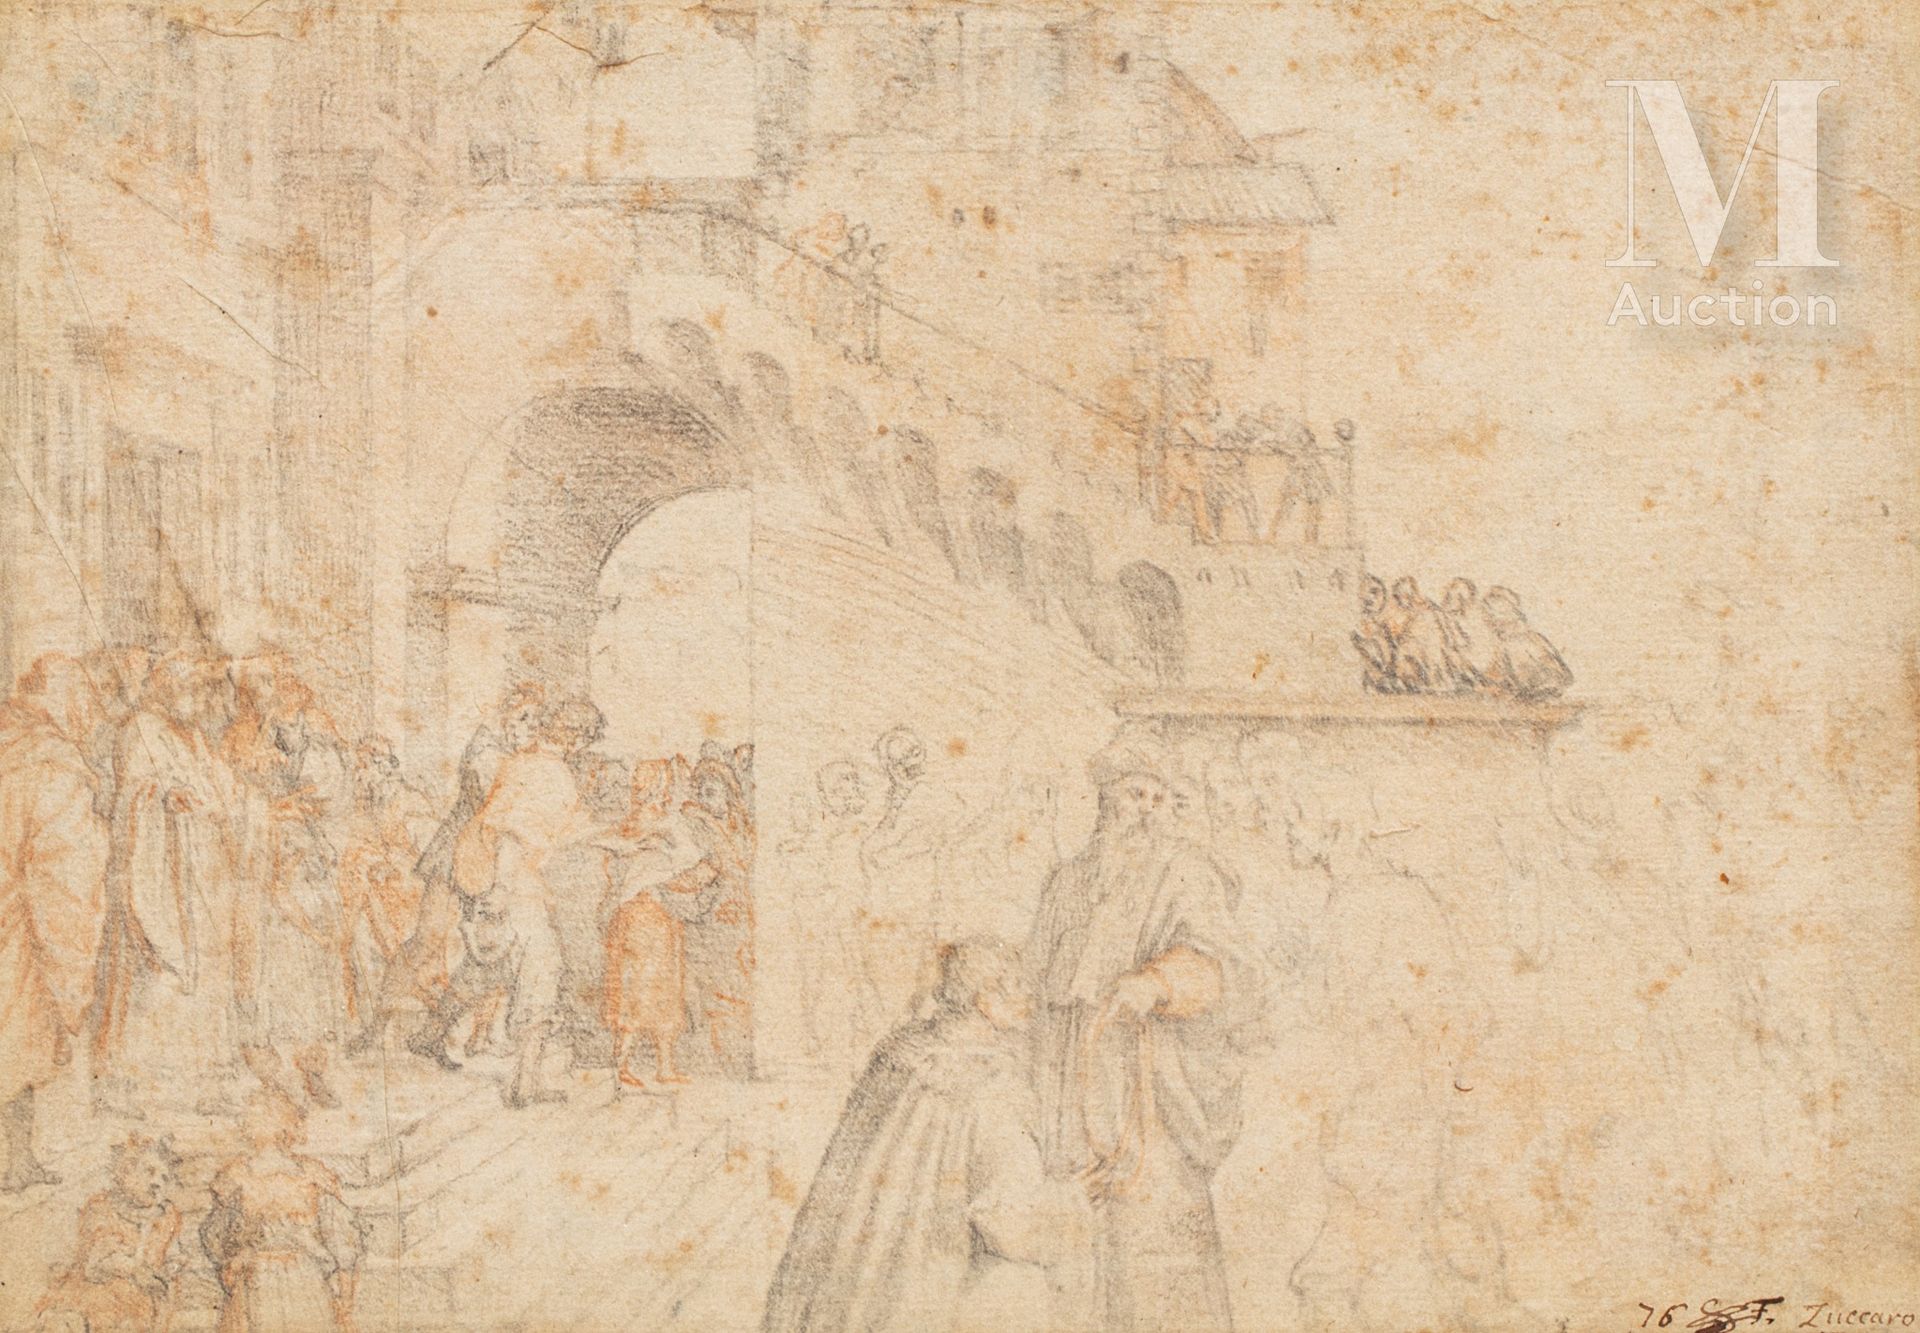 Frederico ZUCCARO (1542 - 1609) Personaggi in un palazzo

Disegno a carboncino

&hellip;